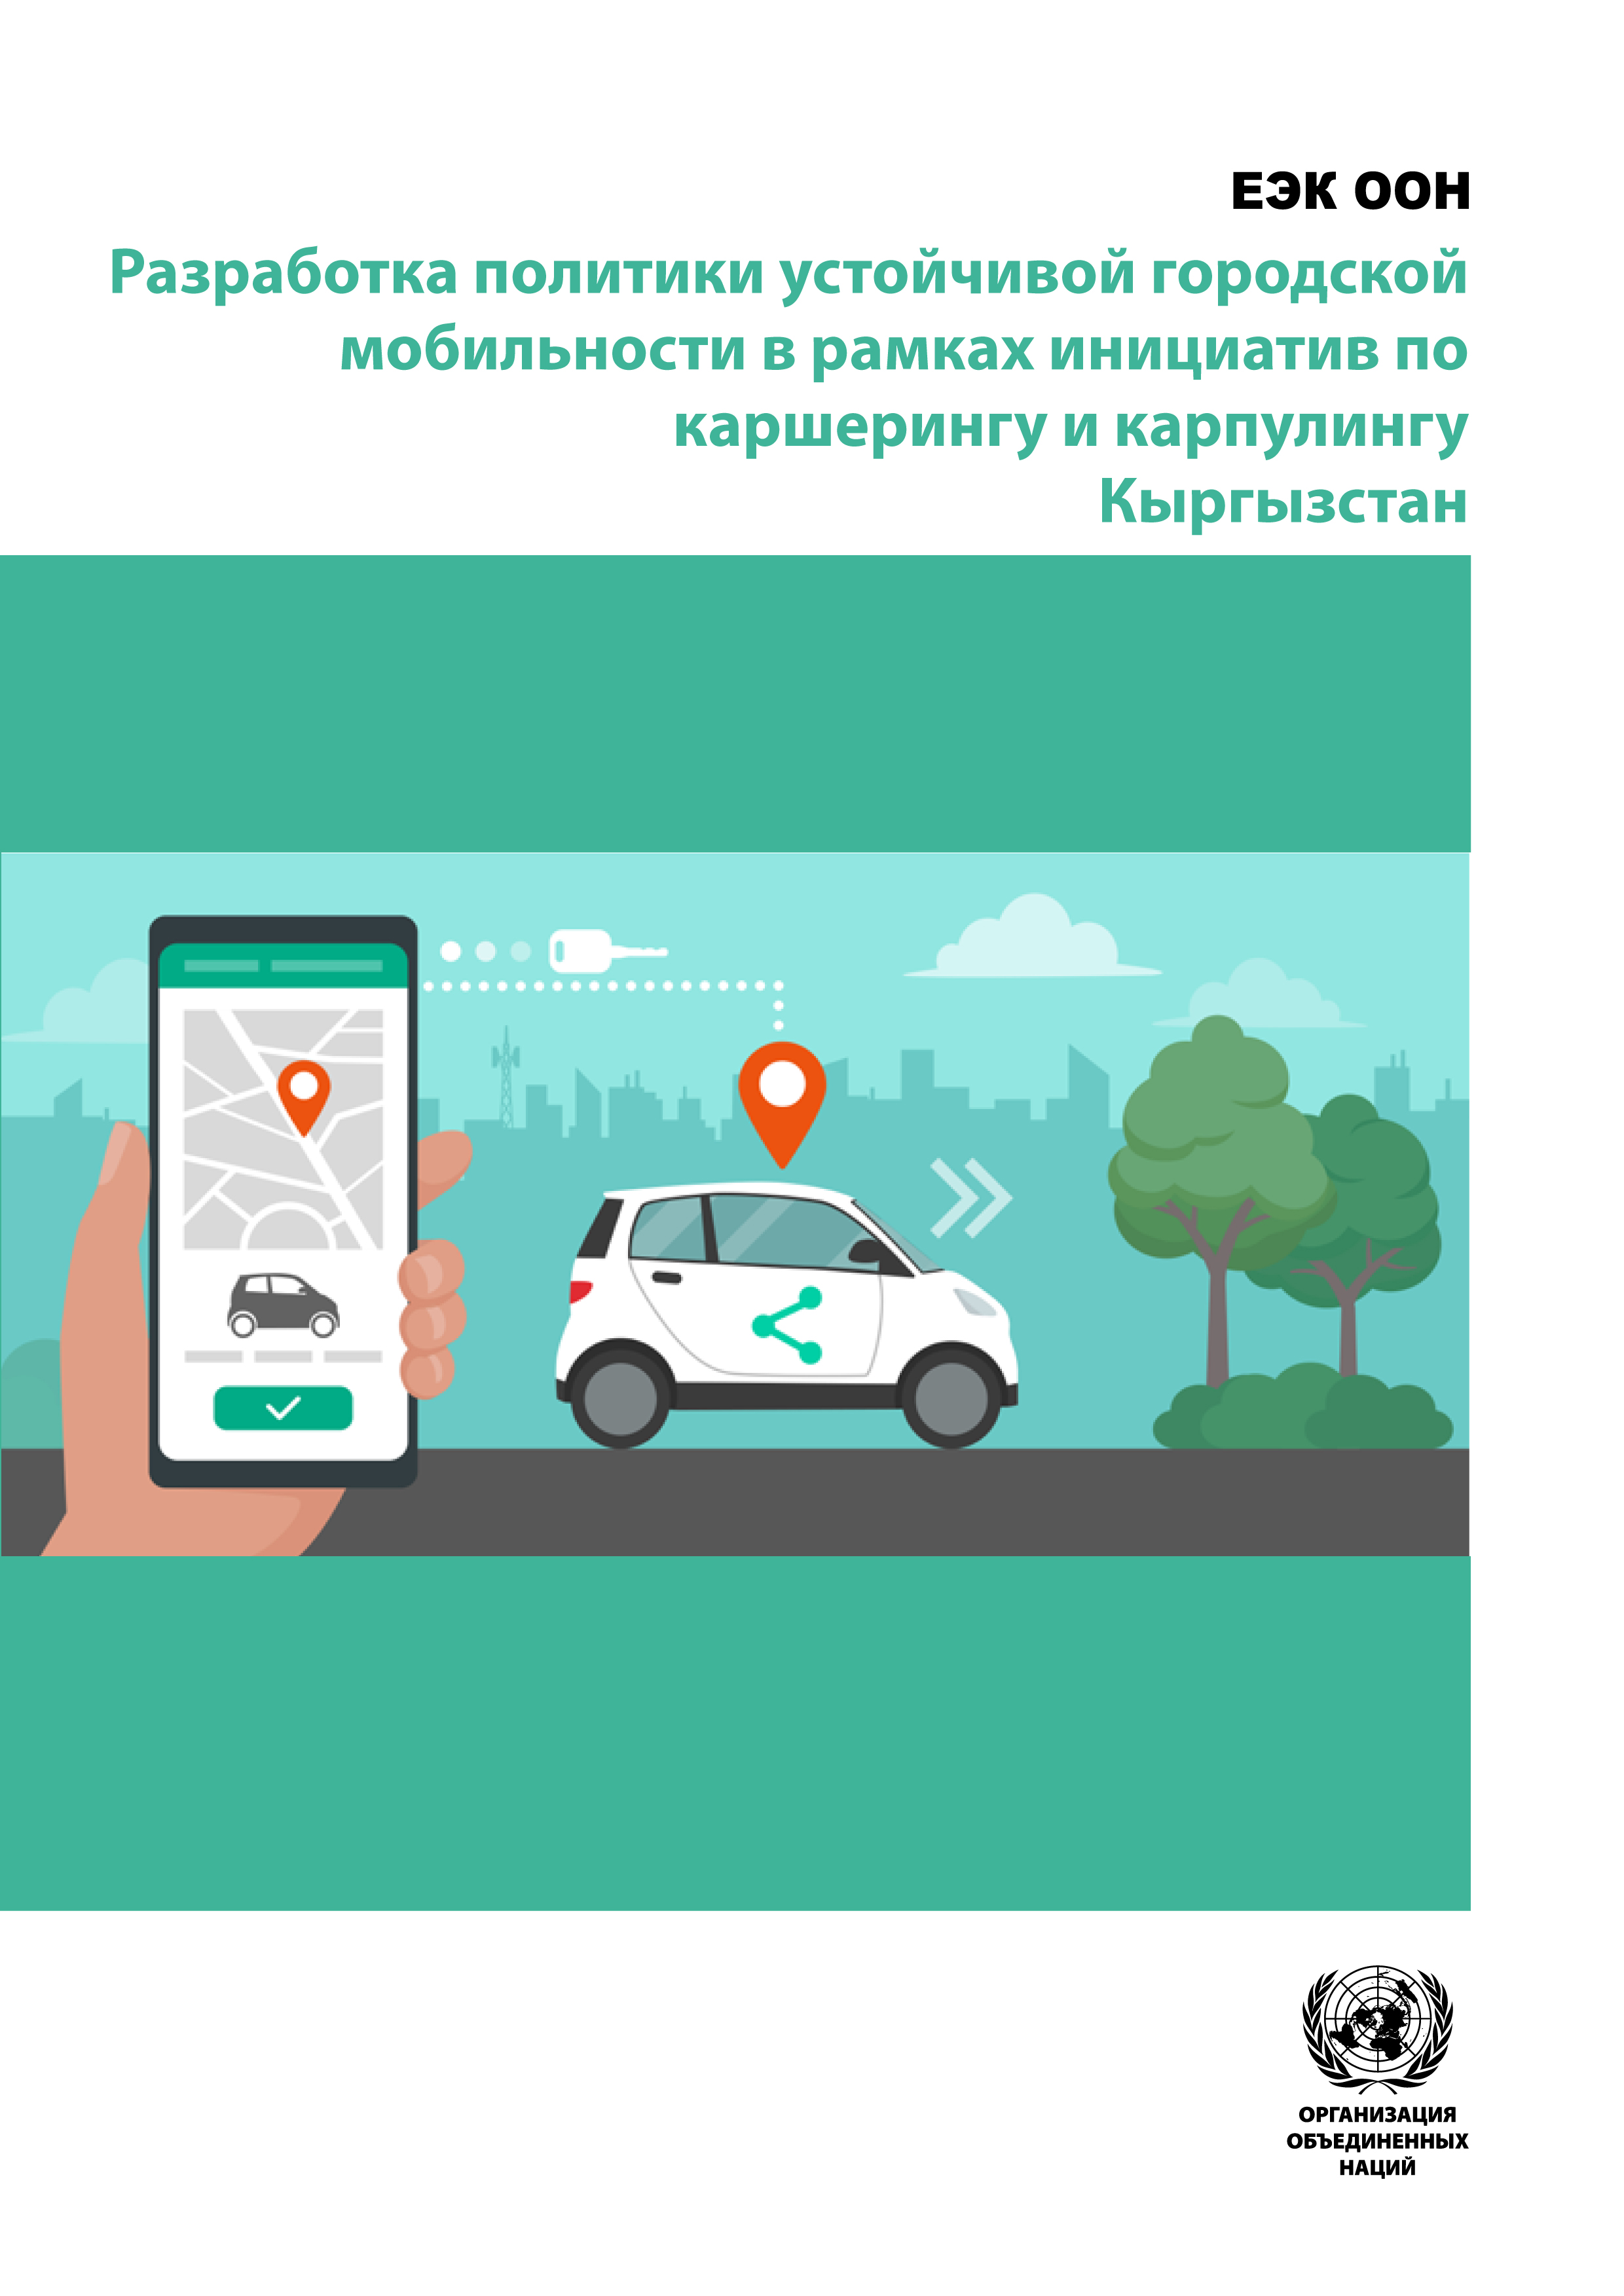 image of Разработка политики устойчивой городской мобильности в рамках инициатив по совместному использованию автомобилей и совместному использованию автомобилей - Кыргызстан